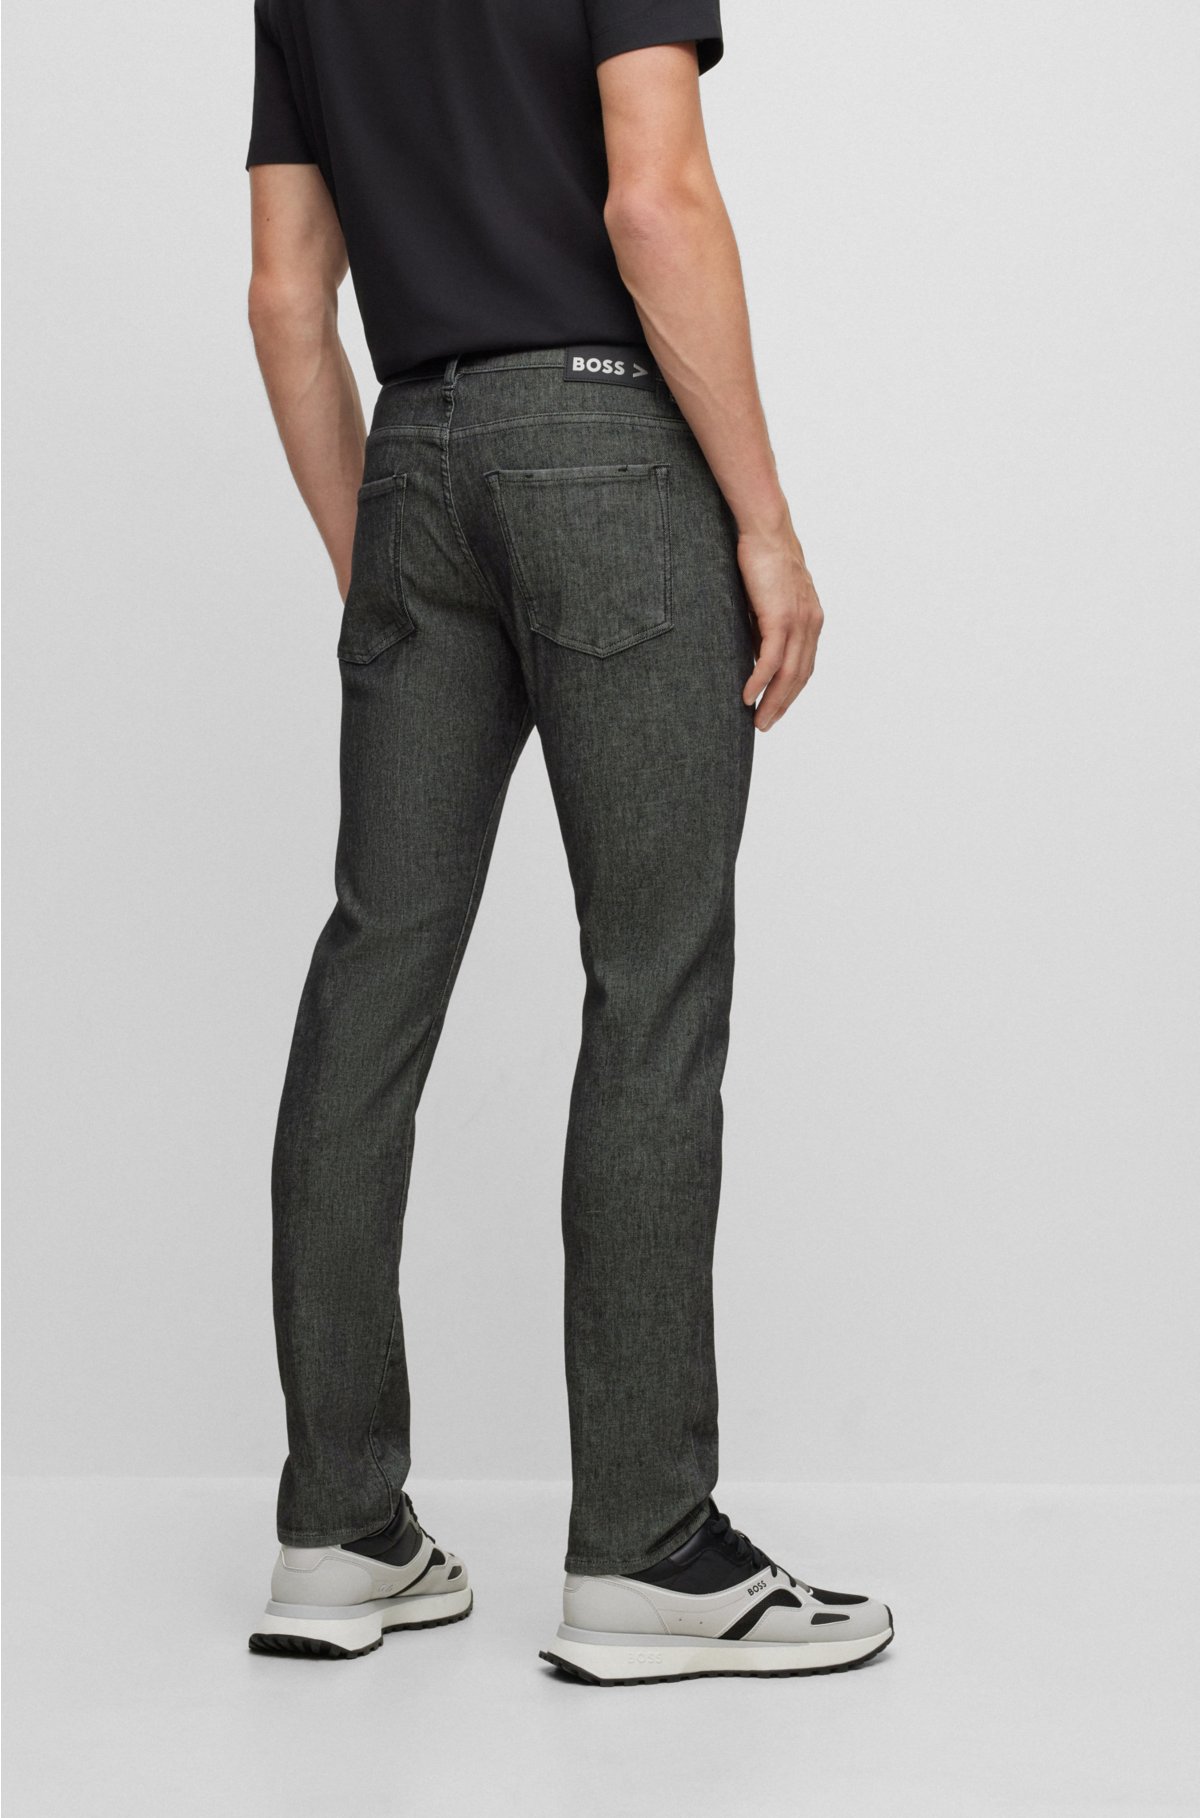 Knit Denim - Stretchy Jeans for Men